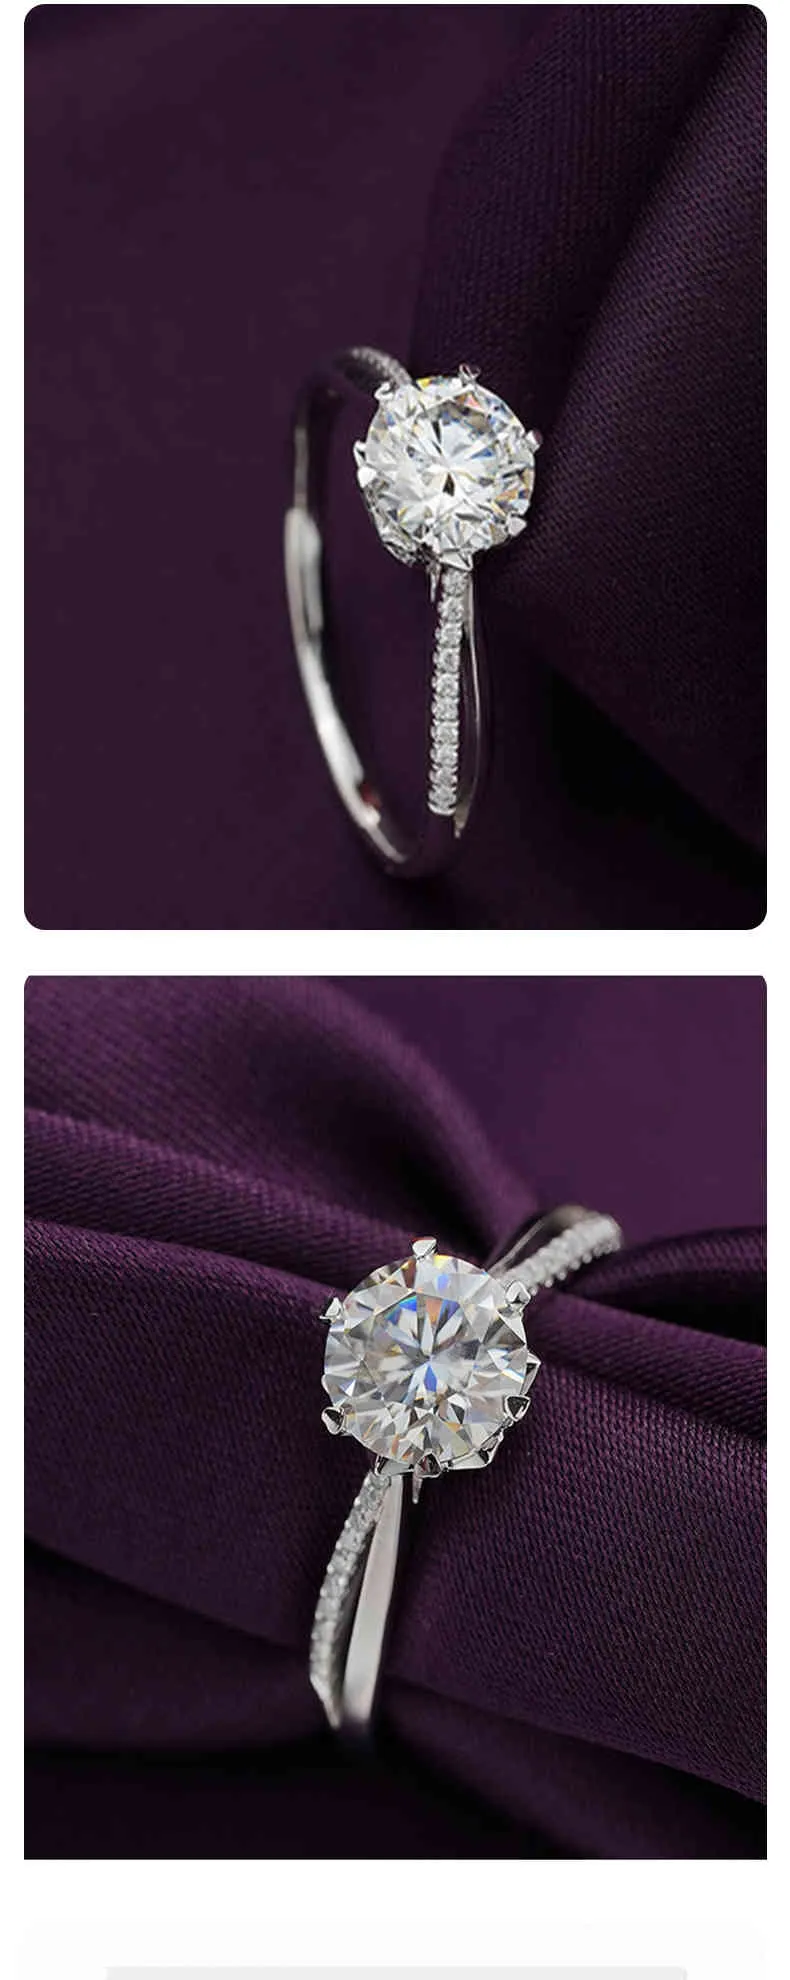 Brillanz D Farbe Moissanit Sterling Silber Hochzeit Diamant Brautring Antrag Verlobung 1 Karat Feiner Schmuck Anpassen